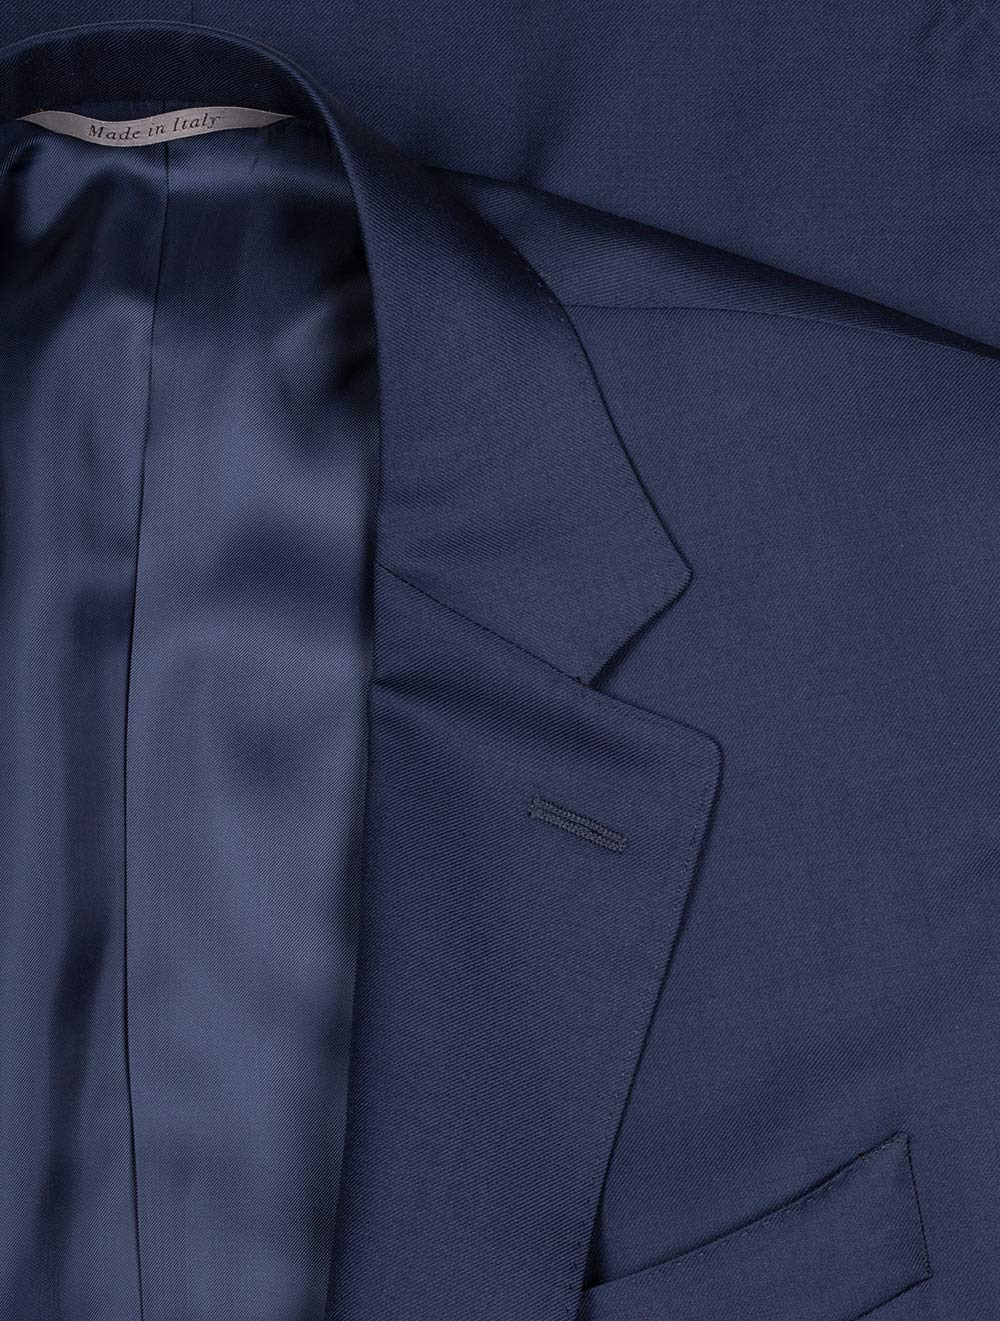 Canali Classic Suit Blue 2 Piece 2 Button Notch Lapel Soft Shoulder Flap Pockets 4